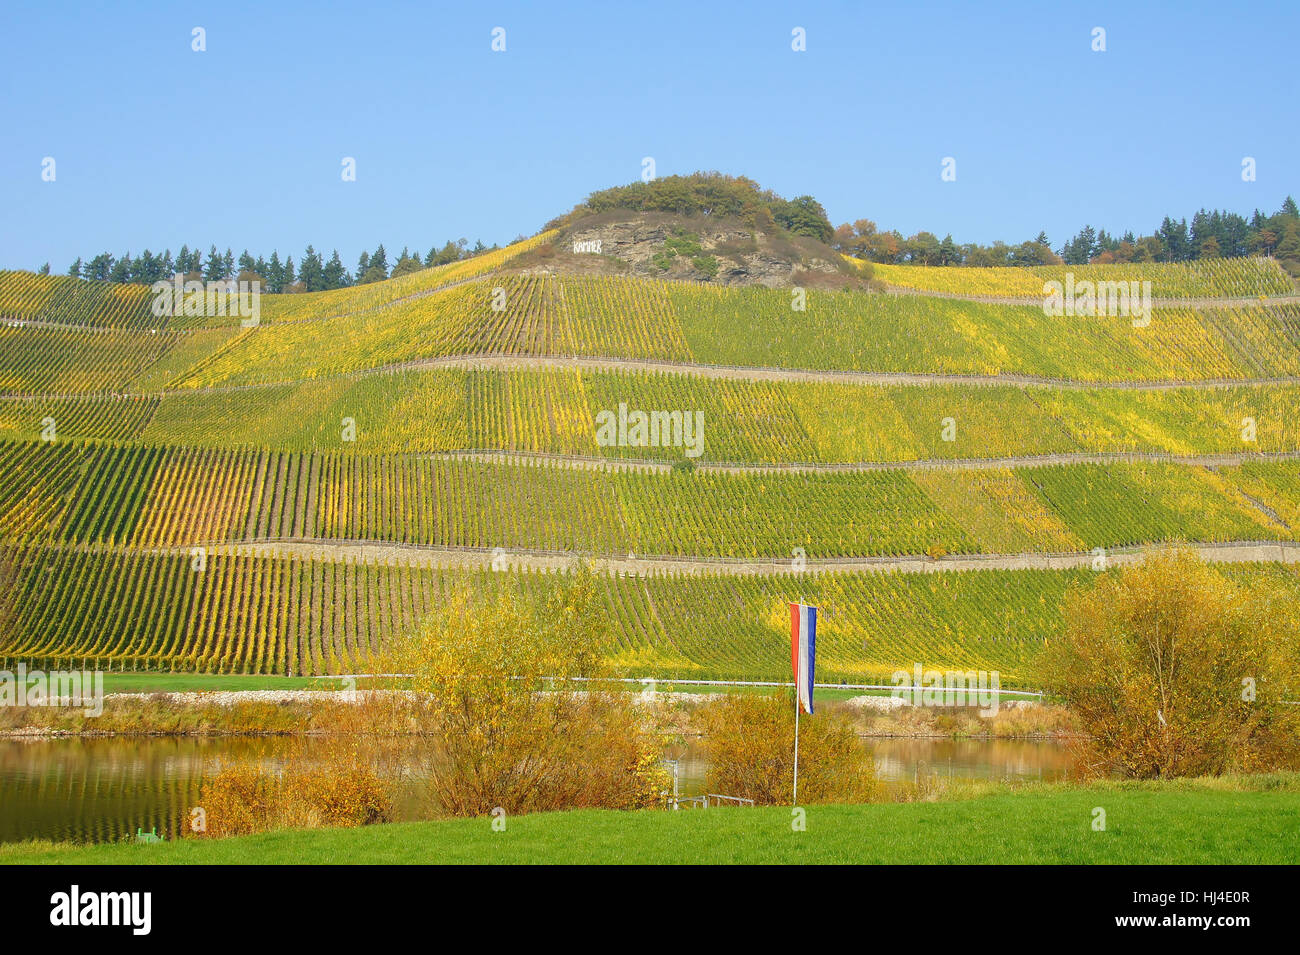 vineyard brauneberger chamberrn Stock Photo